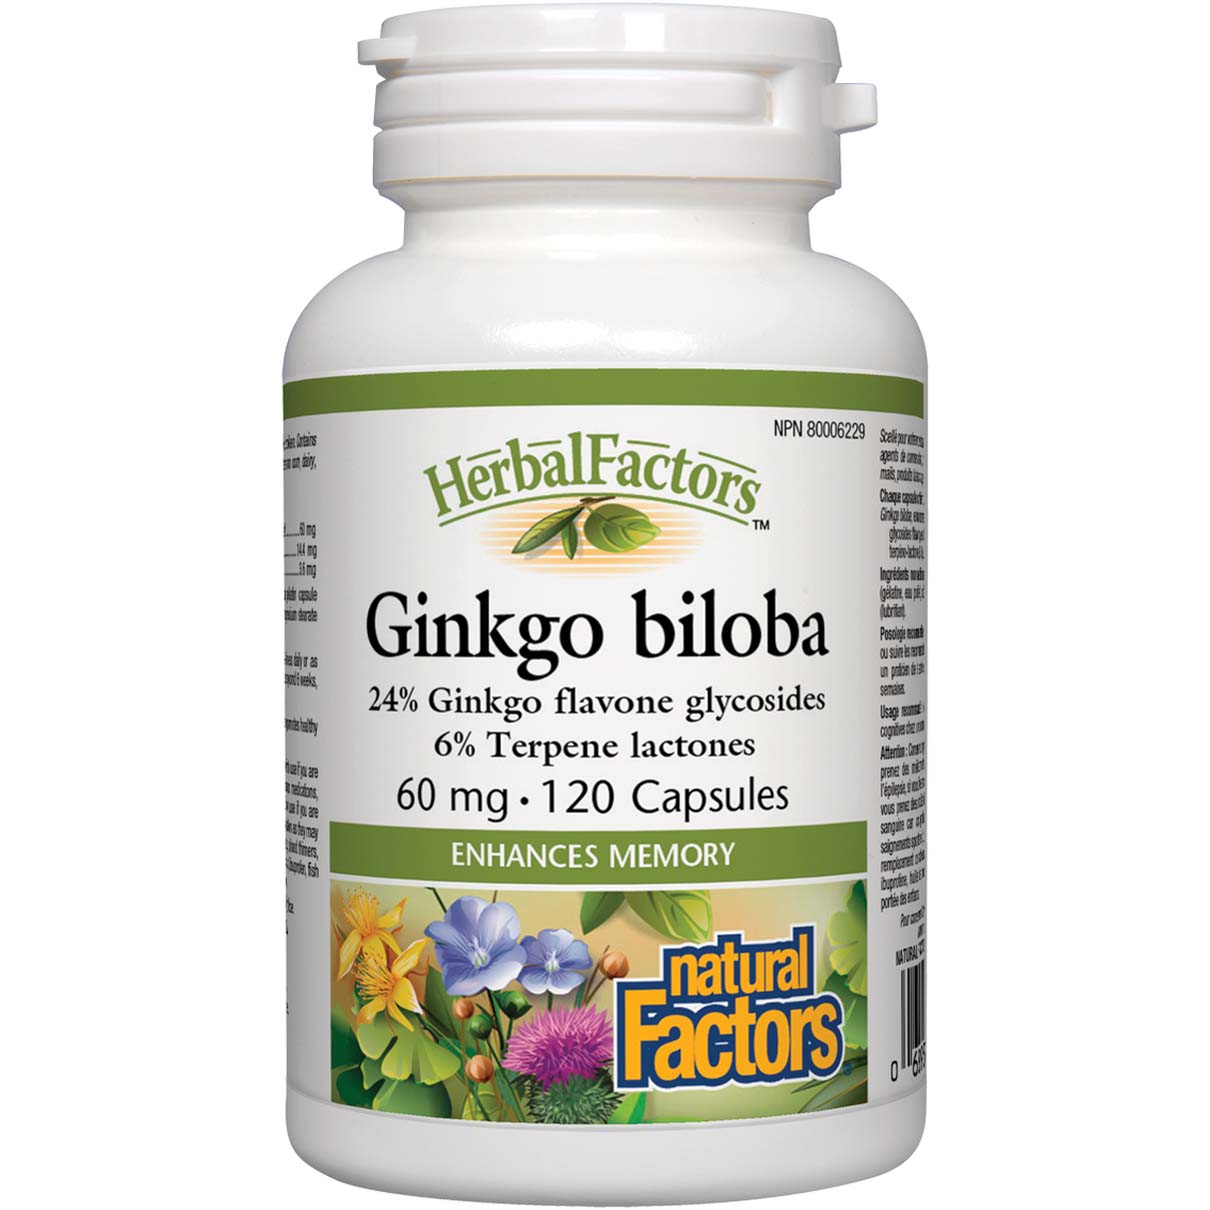 Natural Factors Ginkgo Biloba 120 Capsules 60 mg